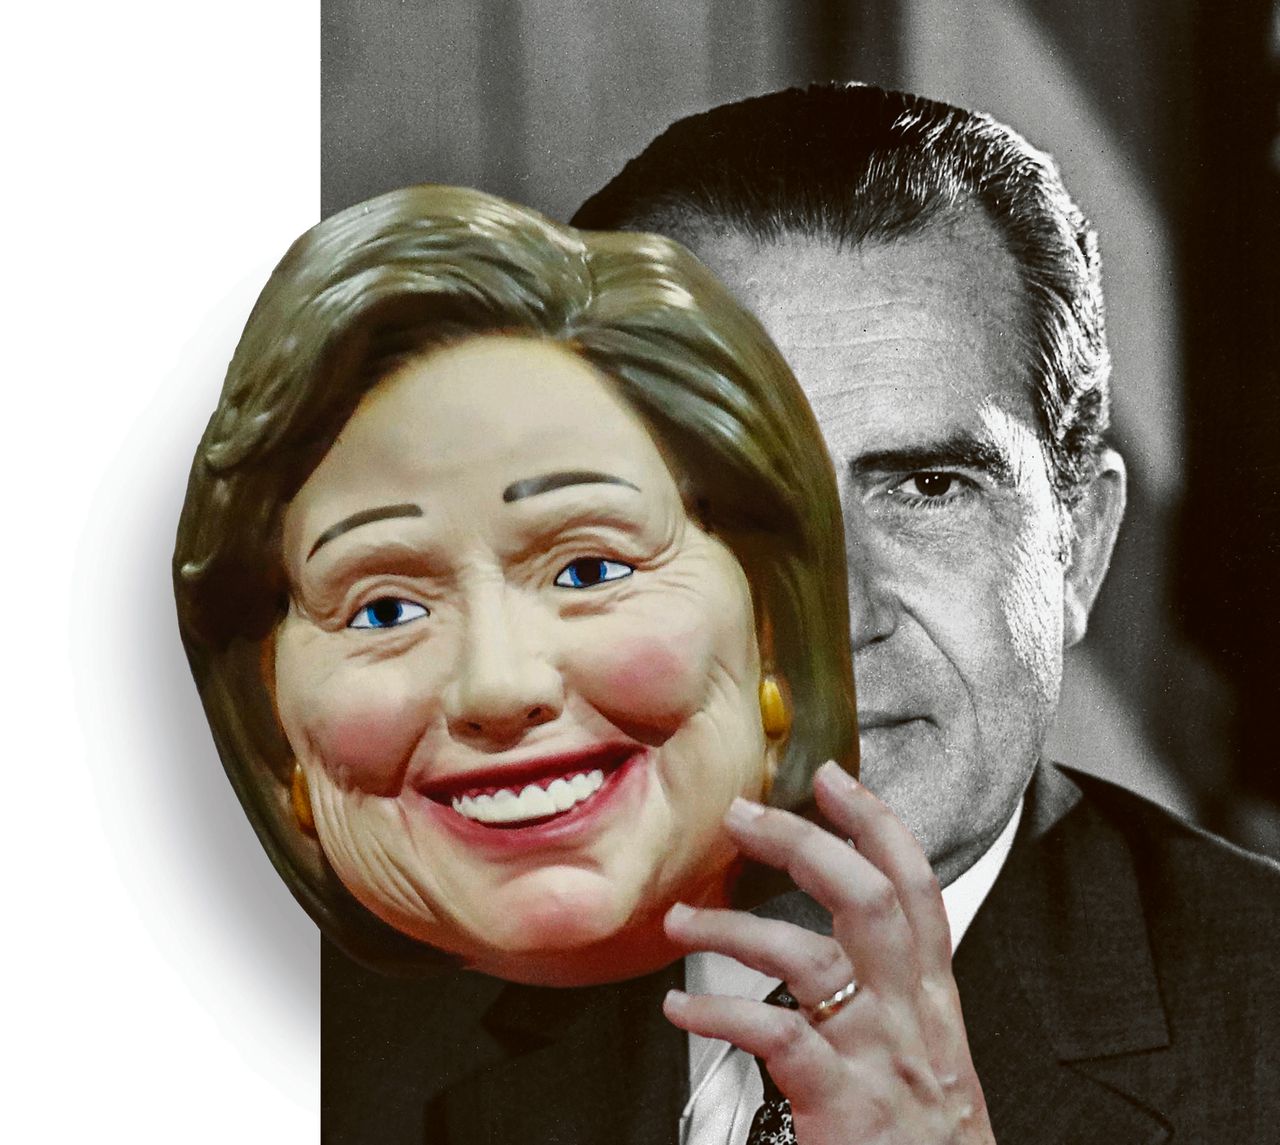 "Met Hillary Clinton keert de geest van Richard Nixon terug in het Witte Huis."